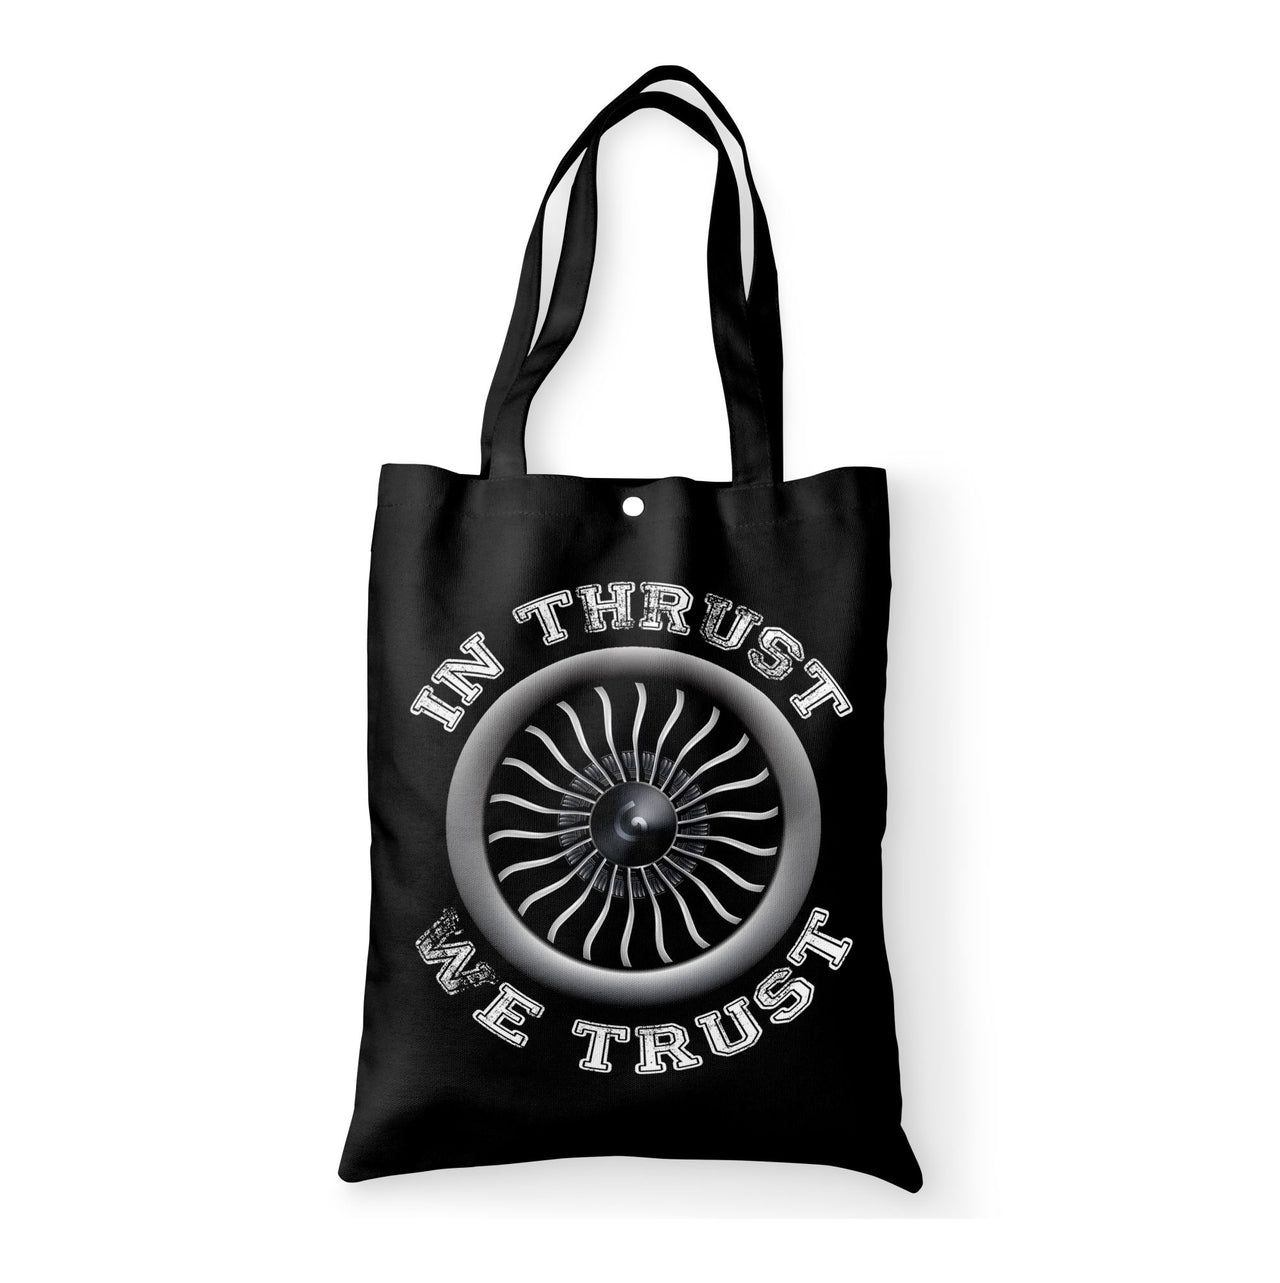 In Thrust We Trust (Vol 2) Designed Tote Bags